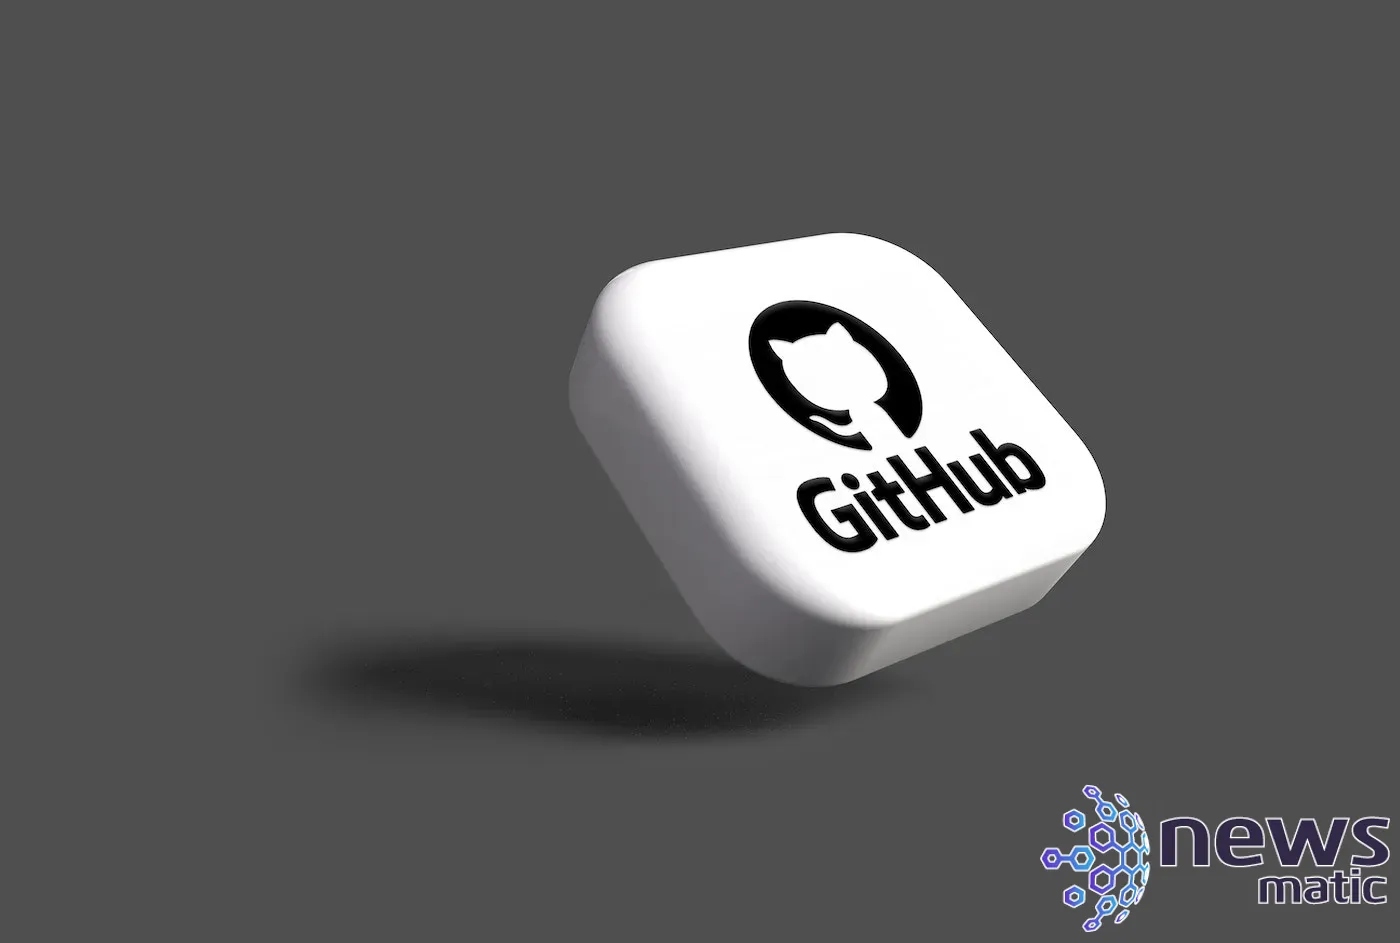 Cómo asegurar tu cuenta de GitHub con autenticación de dos factores - Seguridad | Imagen 1 Newsmatic